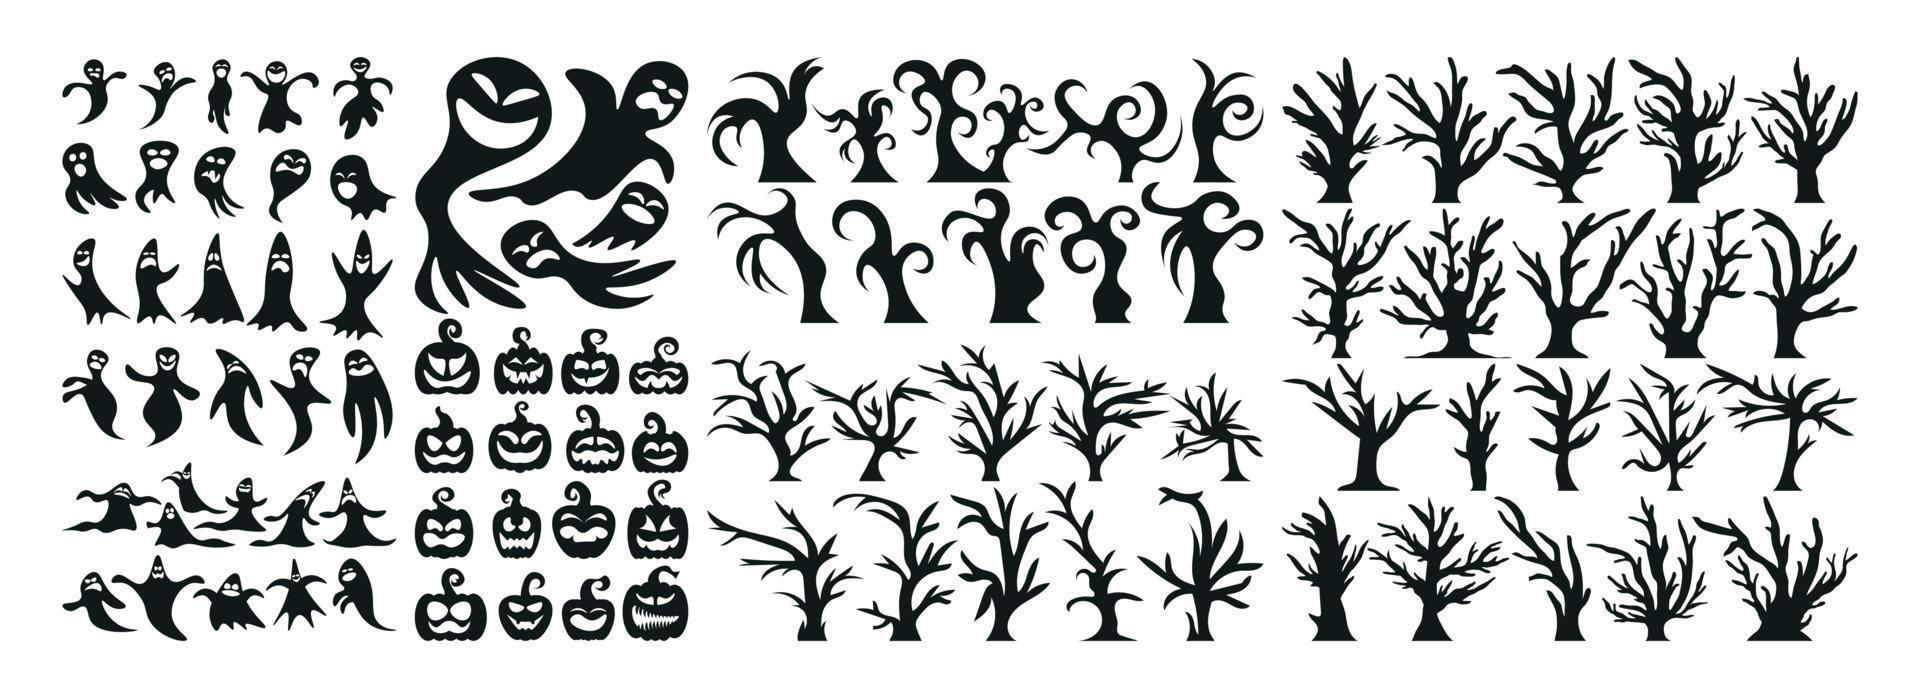 ensemble d'icônes et de personnages de silhouette d'halloween. illustration de vecteur d'halloween isolé sur fond blanc